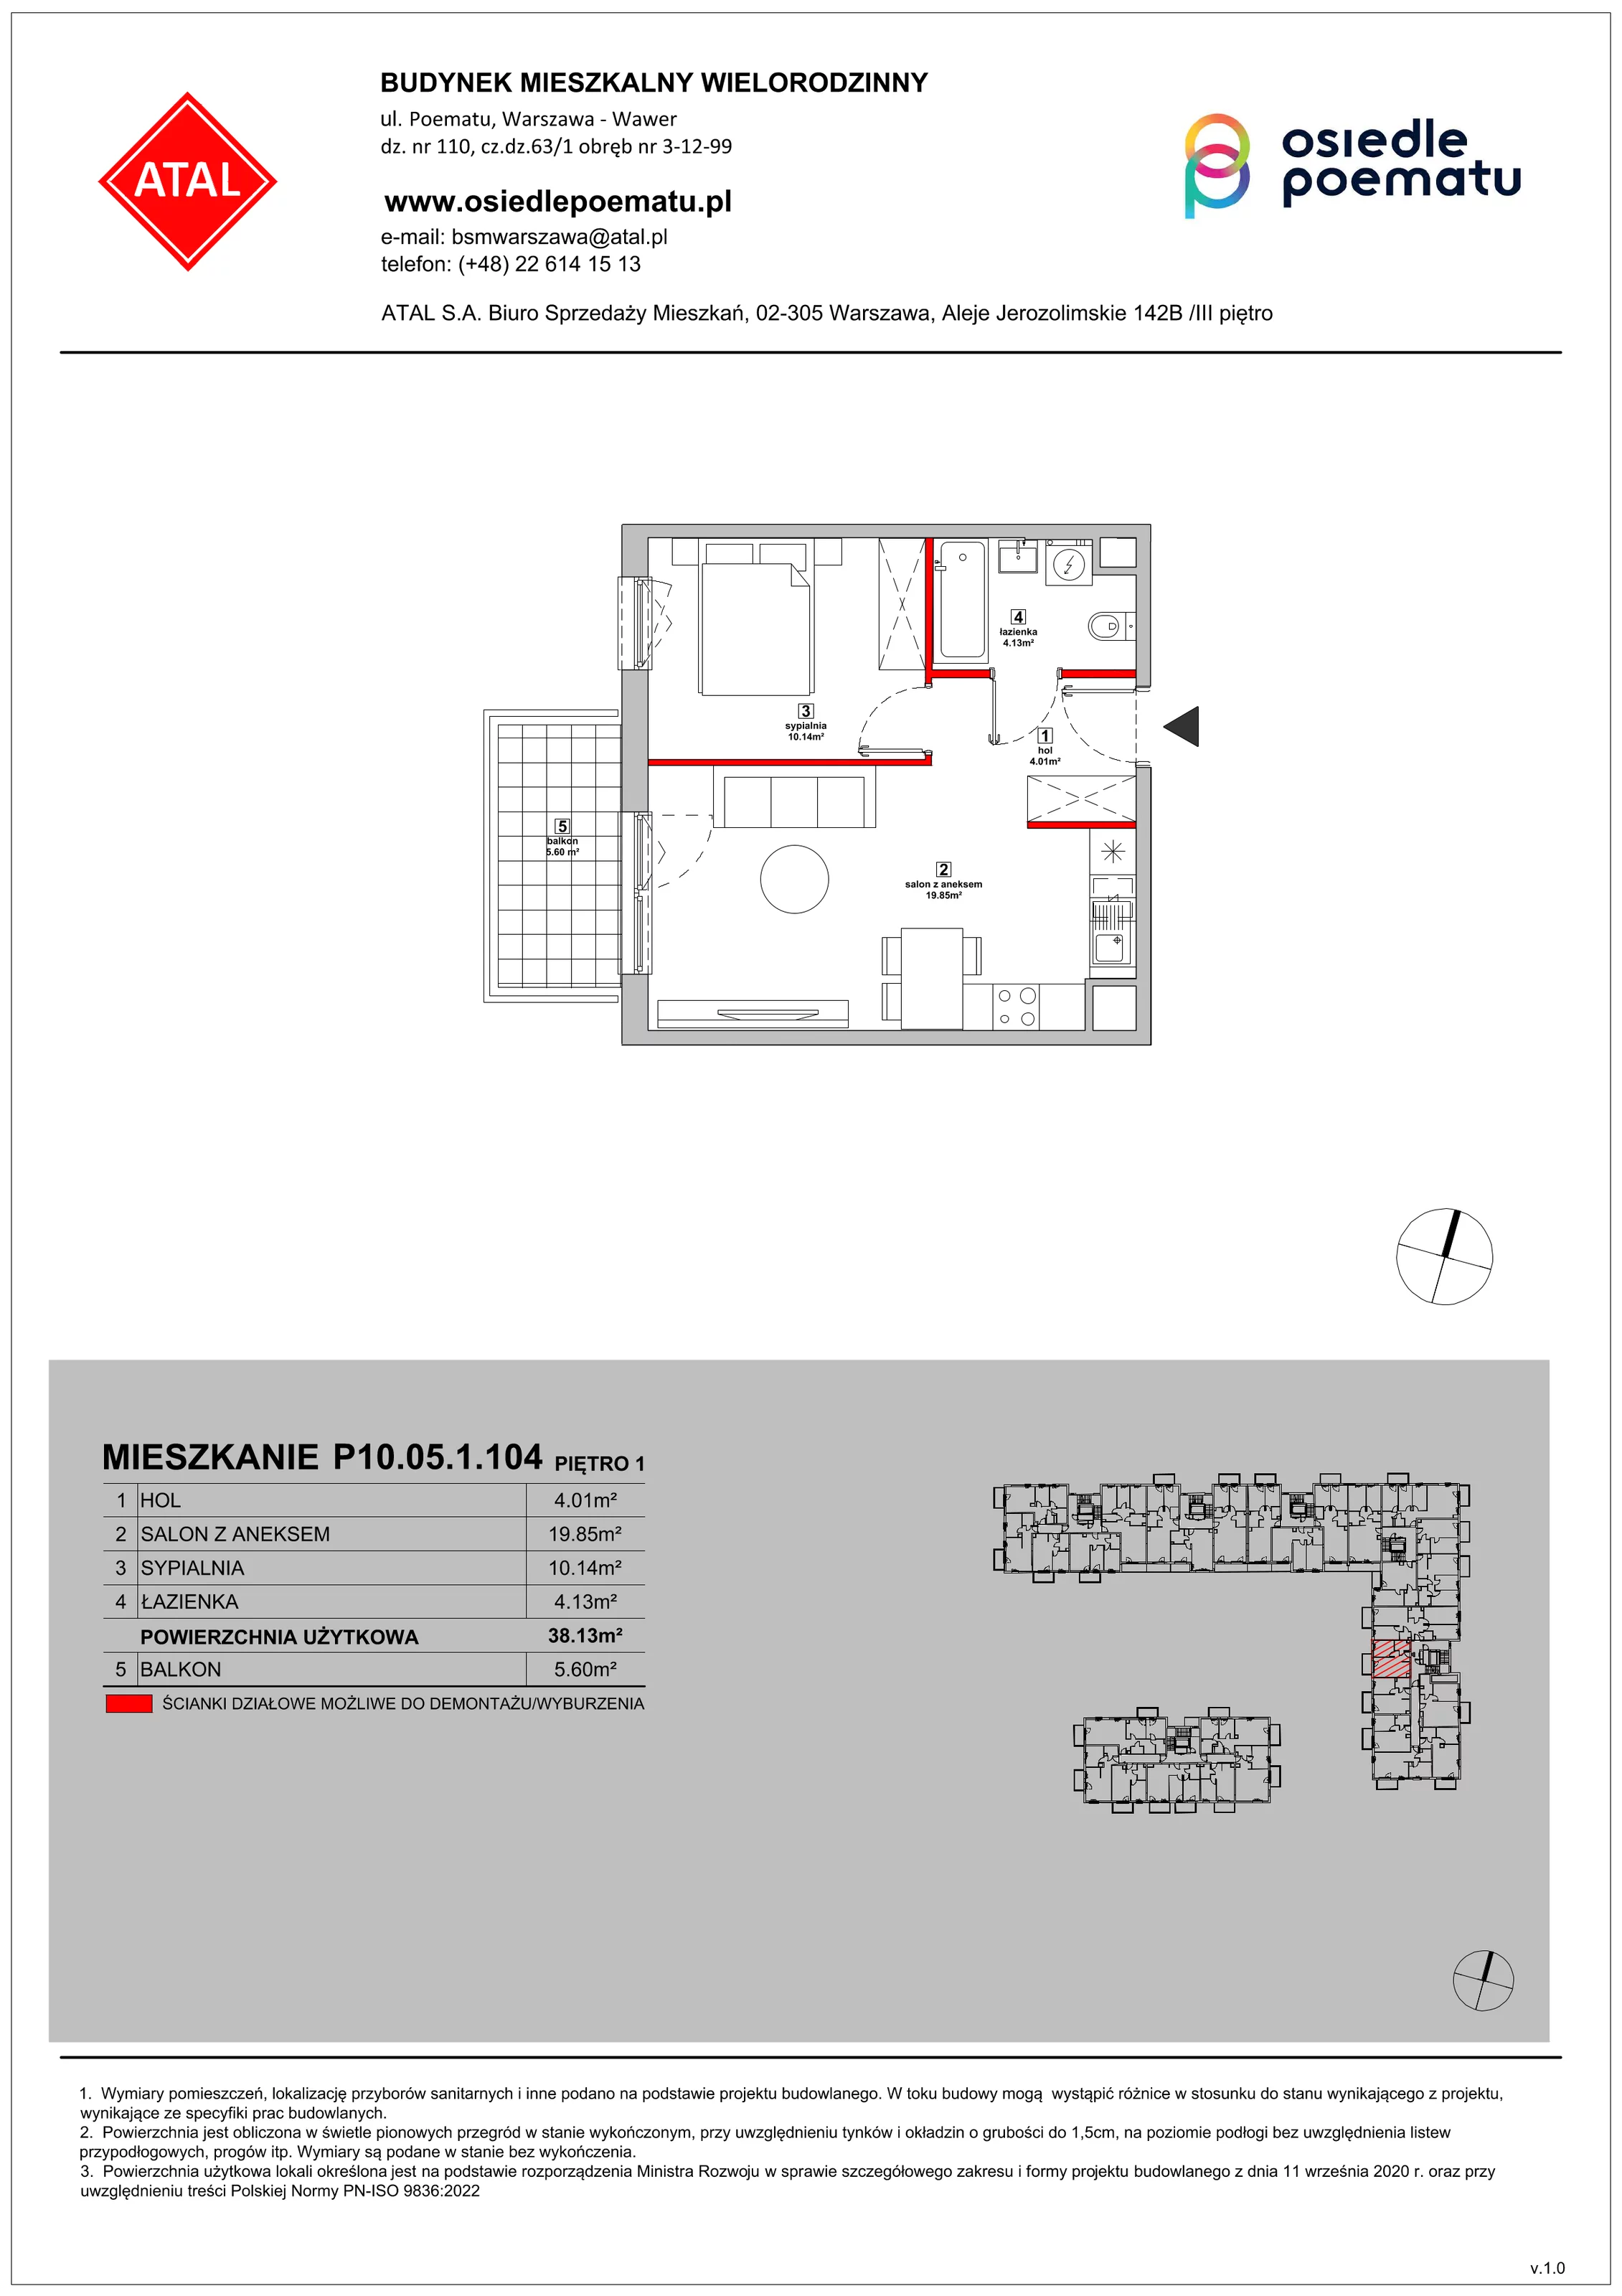 Mieszkanie 38,13 m², piętro 1, oferta nr P10.05.1.104, Osiedle Poematu, Warszawa, Wawer, Falenica, ul. Poematu